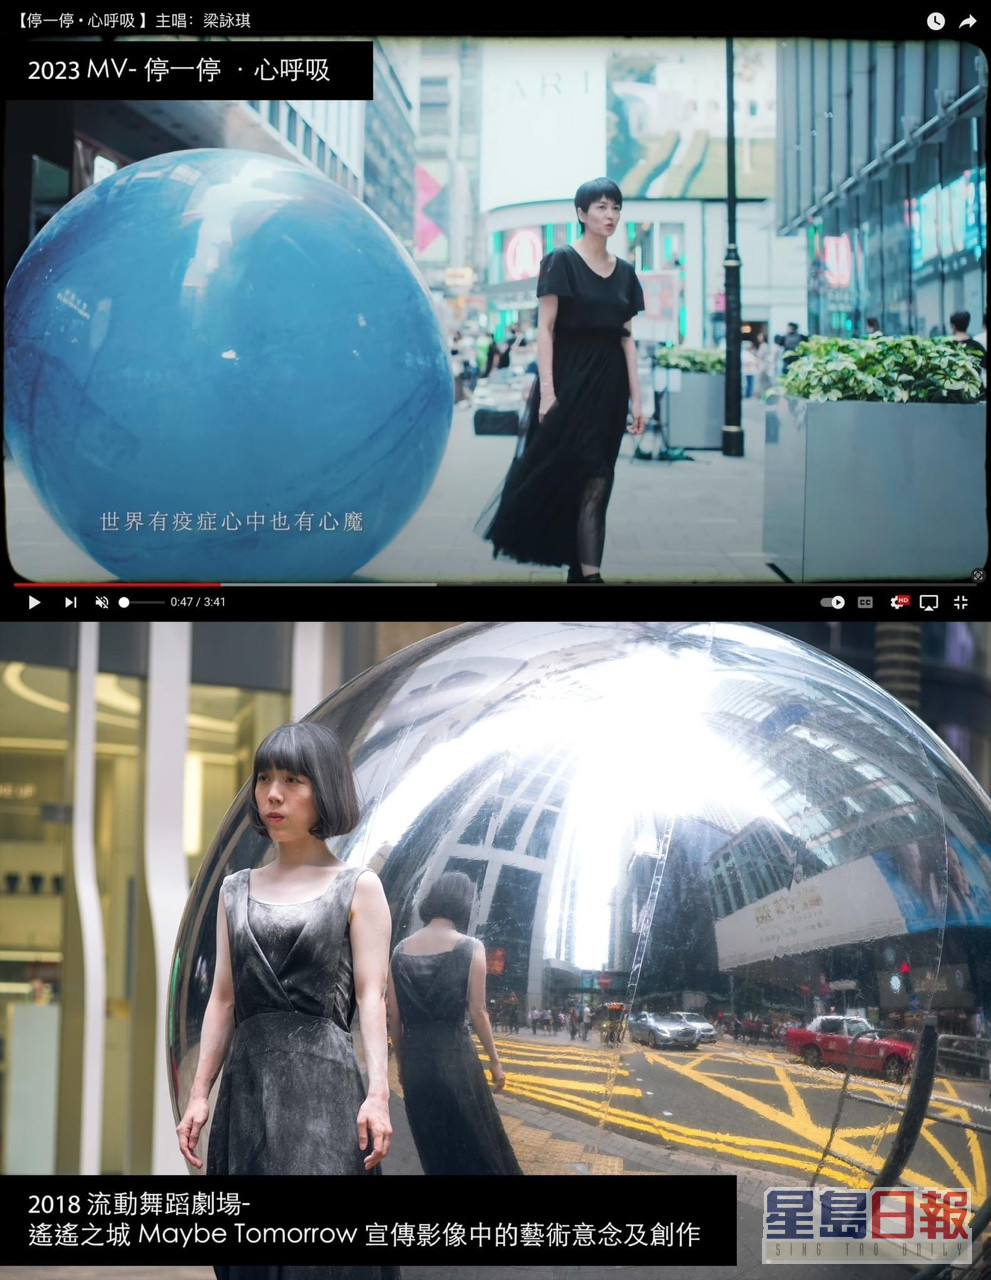 有指MV部分画面与《遥遥之城 Maybe Tomorrow》的相似度高达九成。